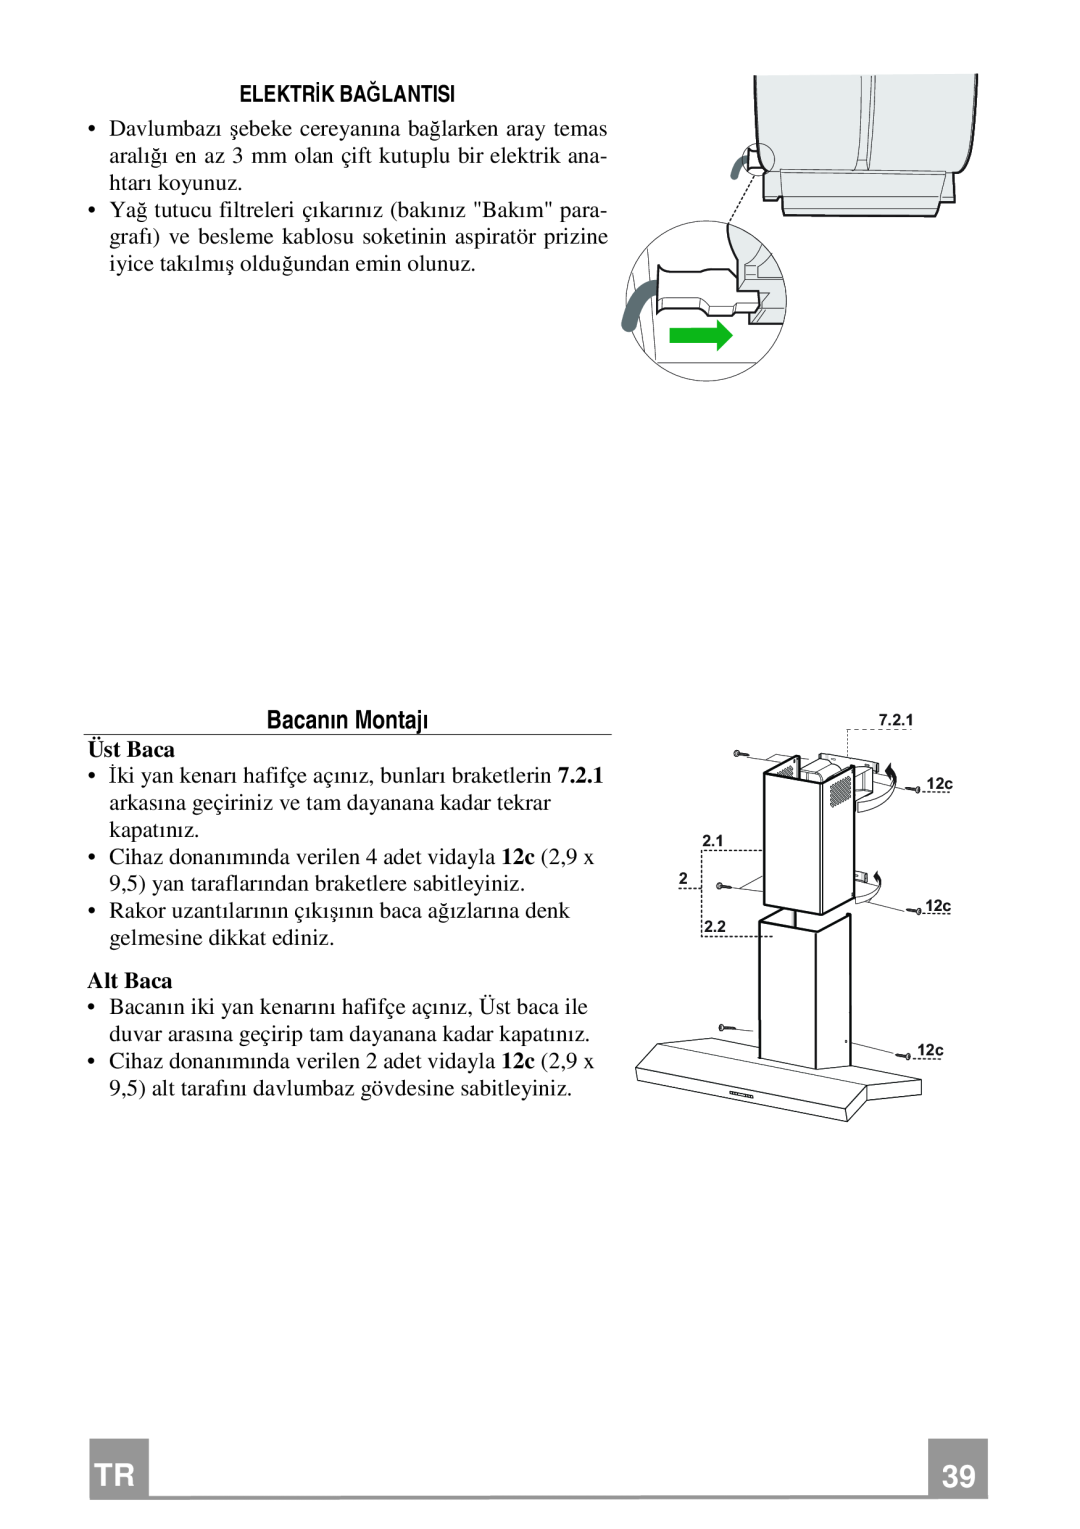 Franke Consumer Products FCH 906 manual Bacanın Montajı, Elektrik Bağlantisi 